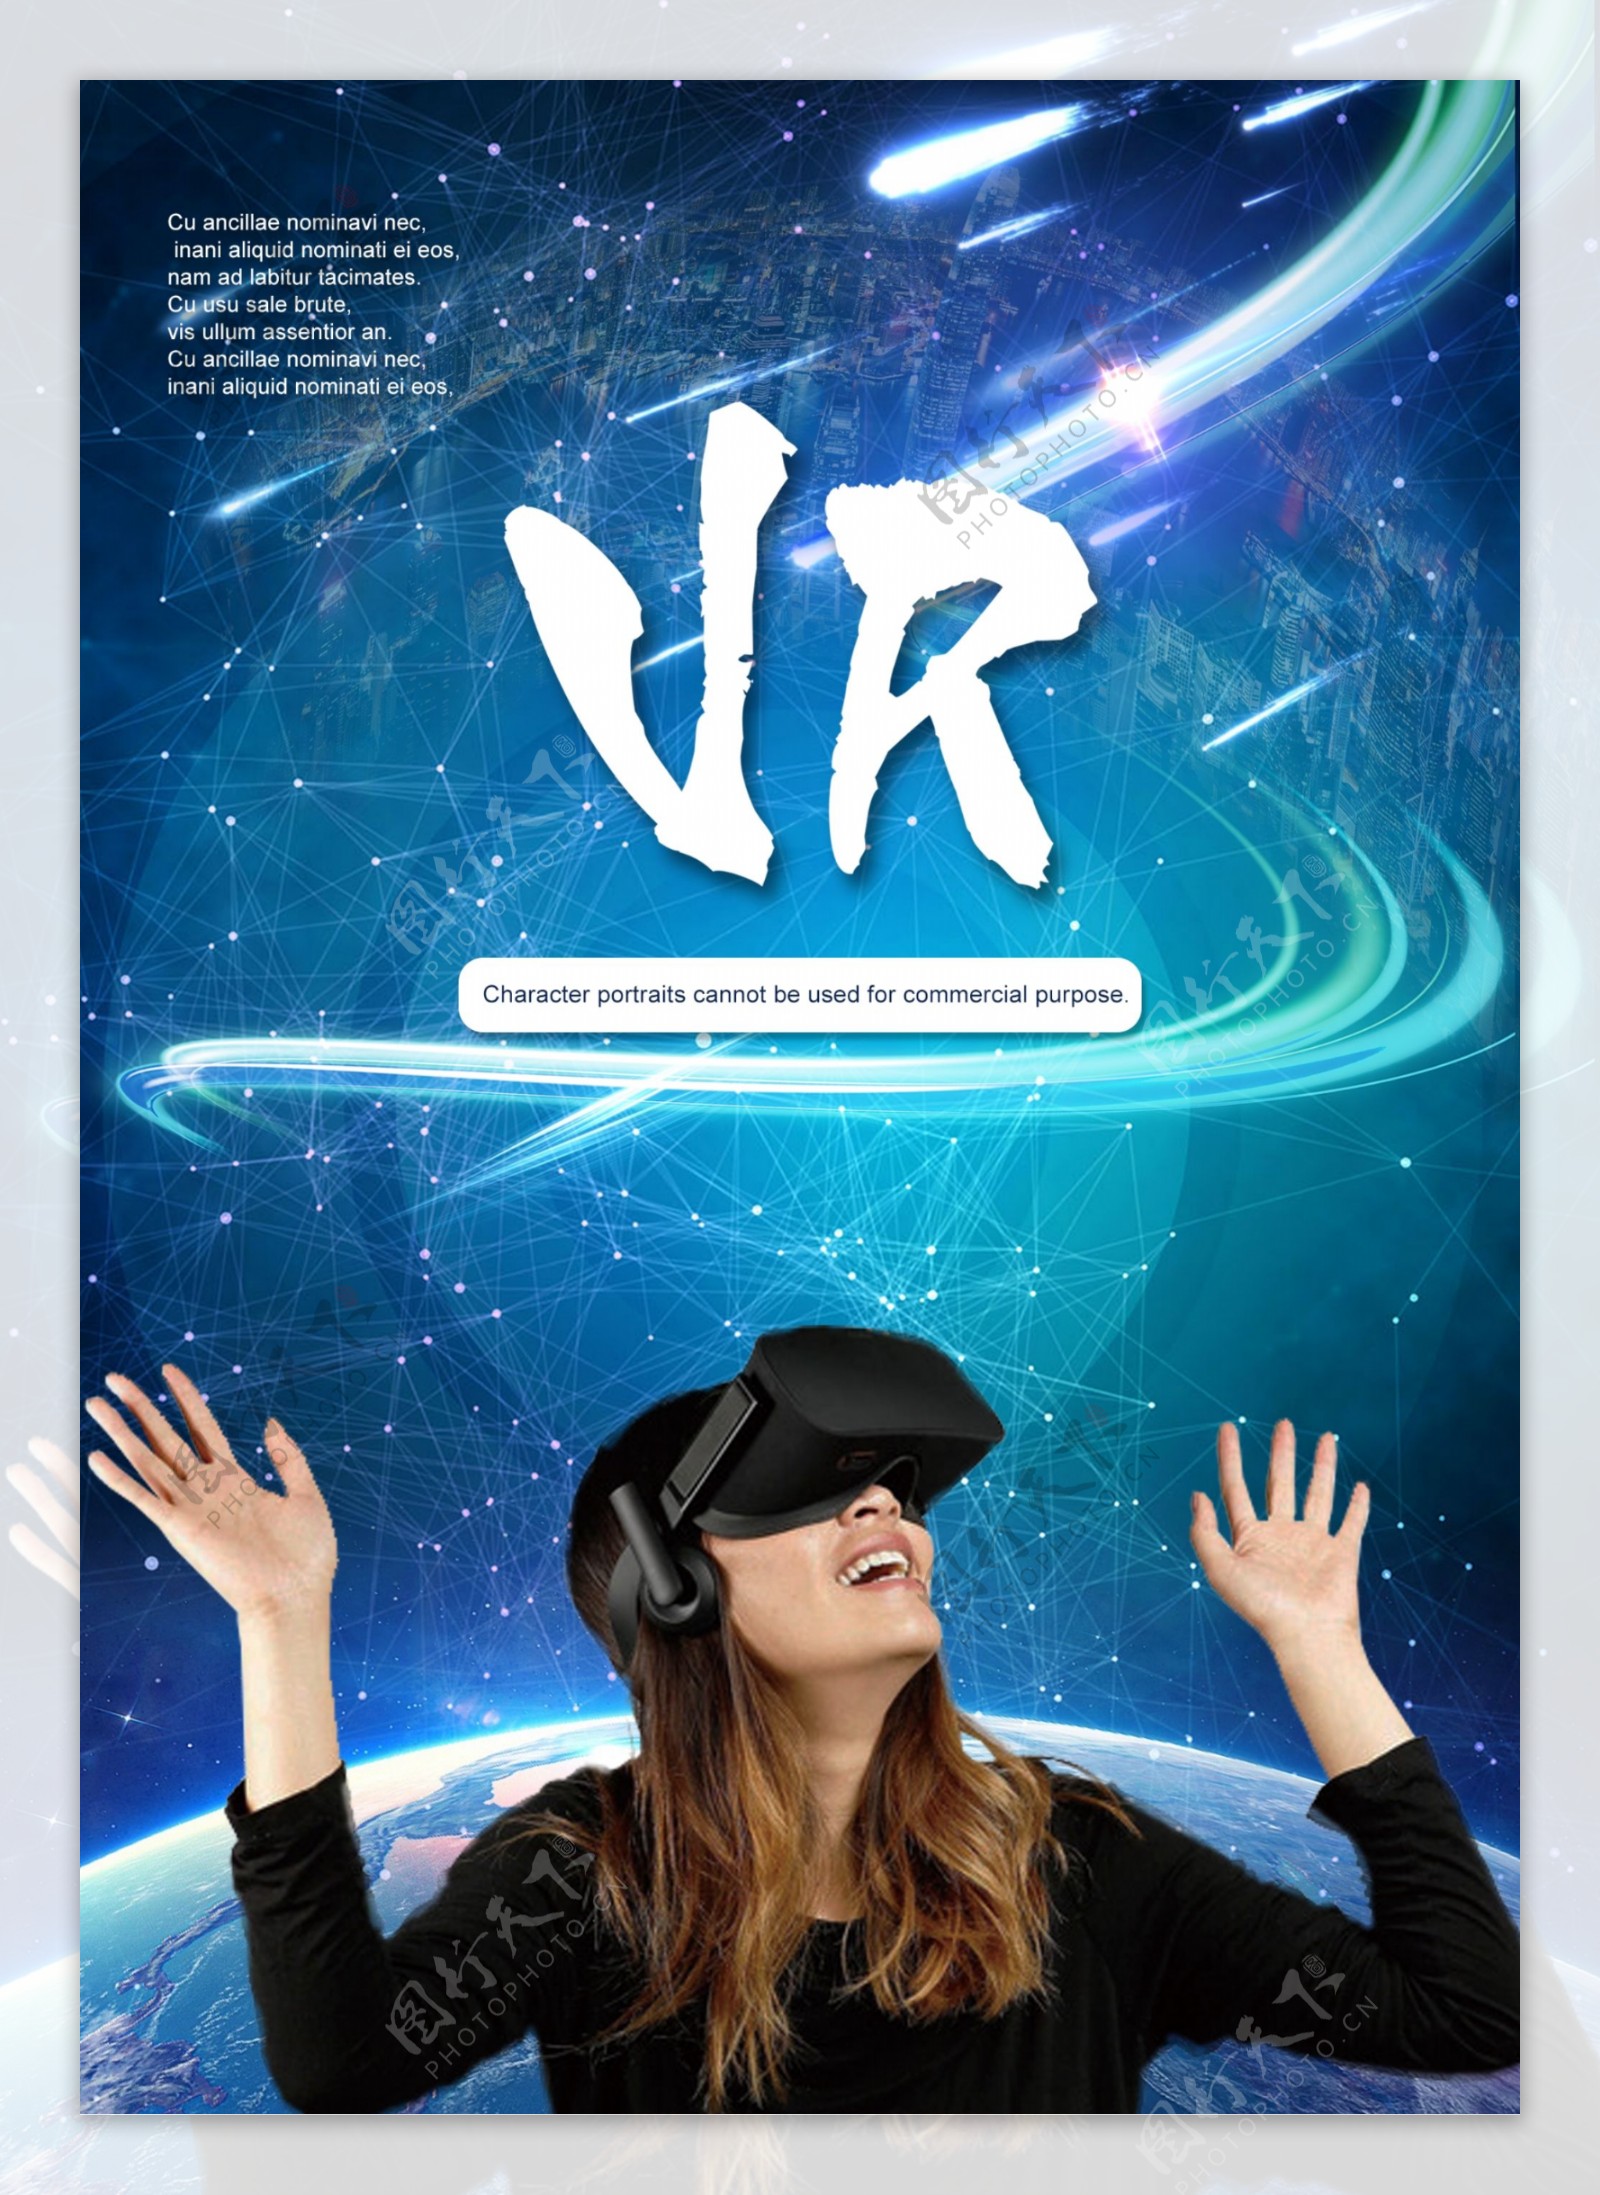 未来科学技术感vrvr虚拟世界海报